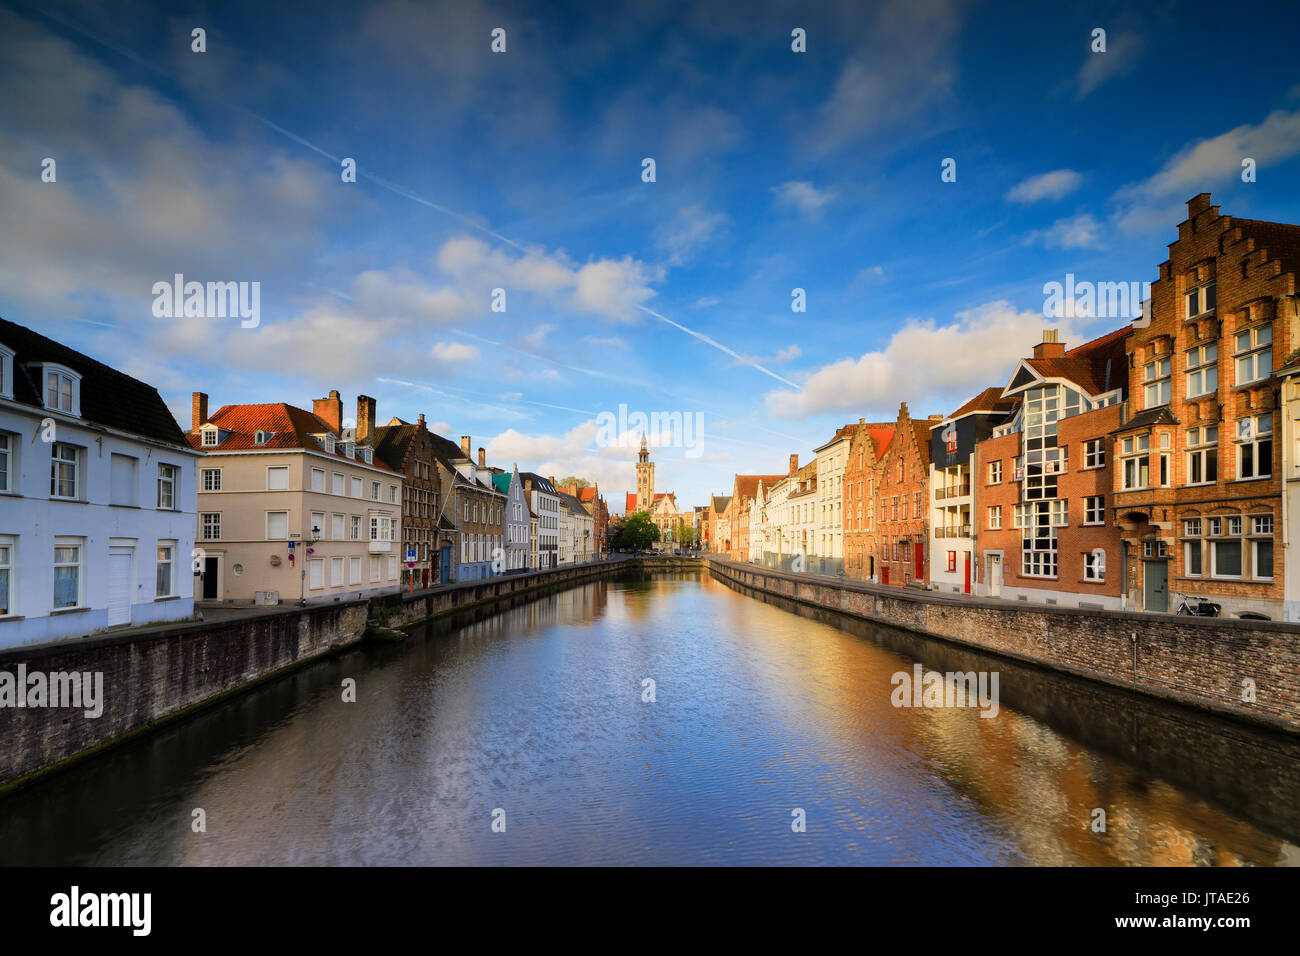 Cielo brillante al amanecer en casas y edificios históricos del centro de la ciudad se refleja en el canal, brujas, Flandes Occidental, Bélgica, Europa Foto de stock